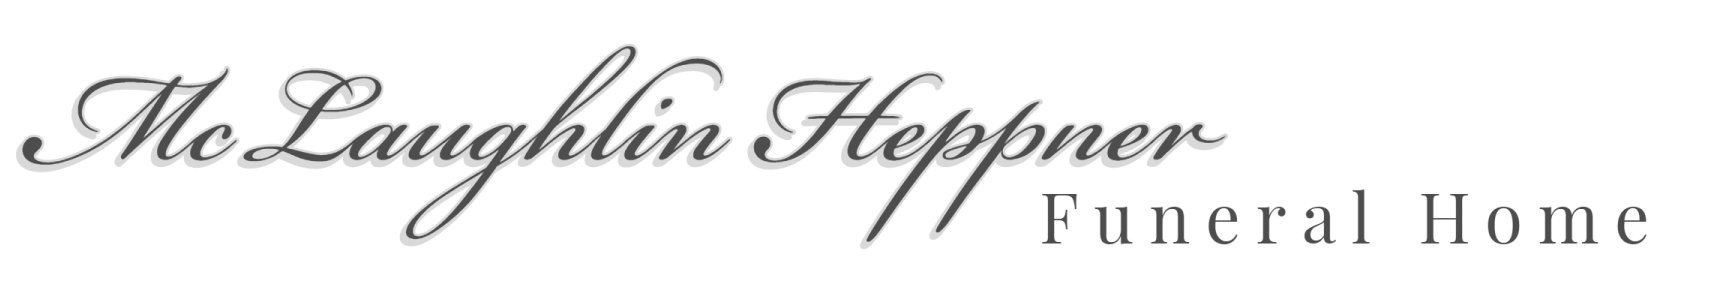 McLaughlin Heppner Funeral Home logo